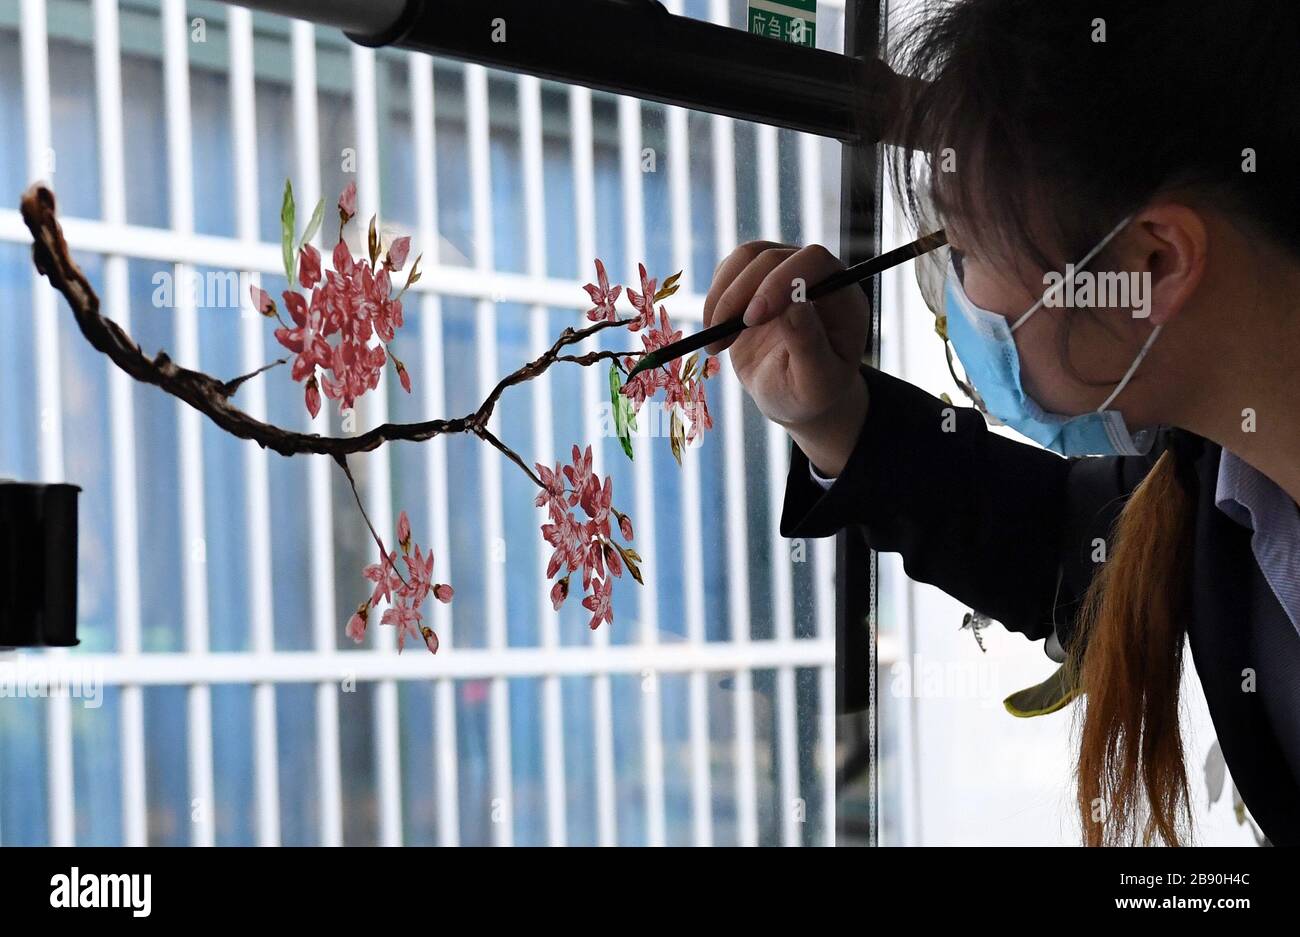 (200323) -- ZHENGZHOU, 23 marzo 2020 (Xinhua) -- Liu Xiangjie attrae fiori sulla finestra degli autobus di Zhengzhou, provincia di Henan della Cina centrale, 23 marzo 2020. Liu Xiangjie lavora come conduttore di autobus della linea S105 gestita dalla Zhengzhou Bus Communication Corporation. Ha dipinto modelli di fiori sulla finestra degli autobus di recente come la primavera viene. (Xinhua/li AN) Foto Stock